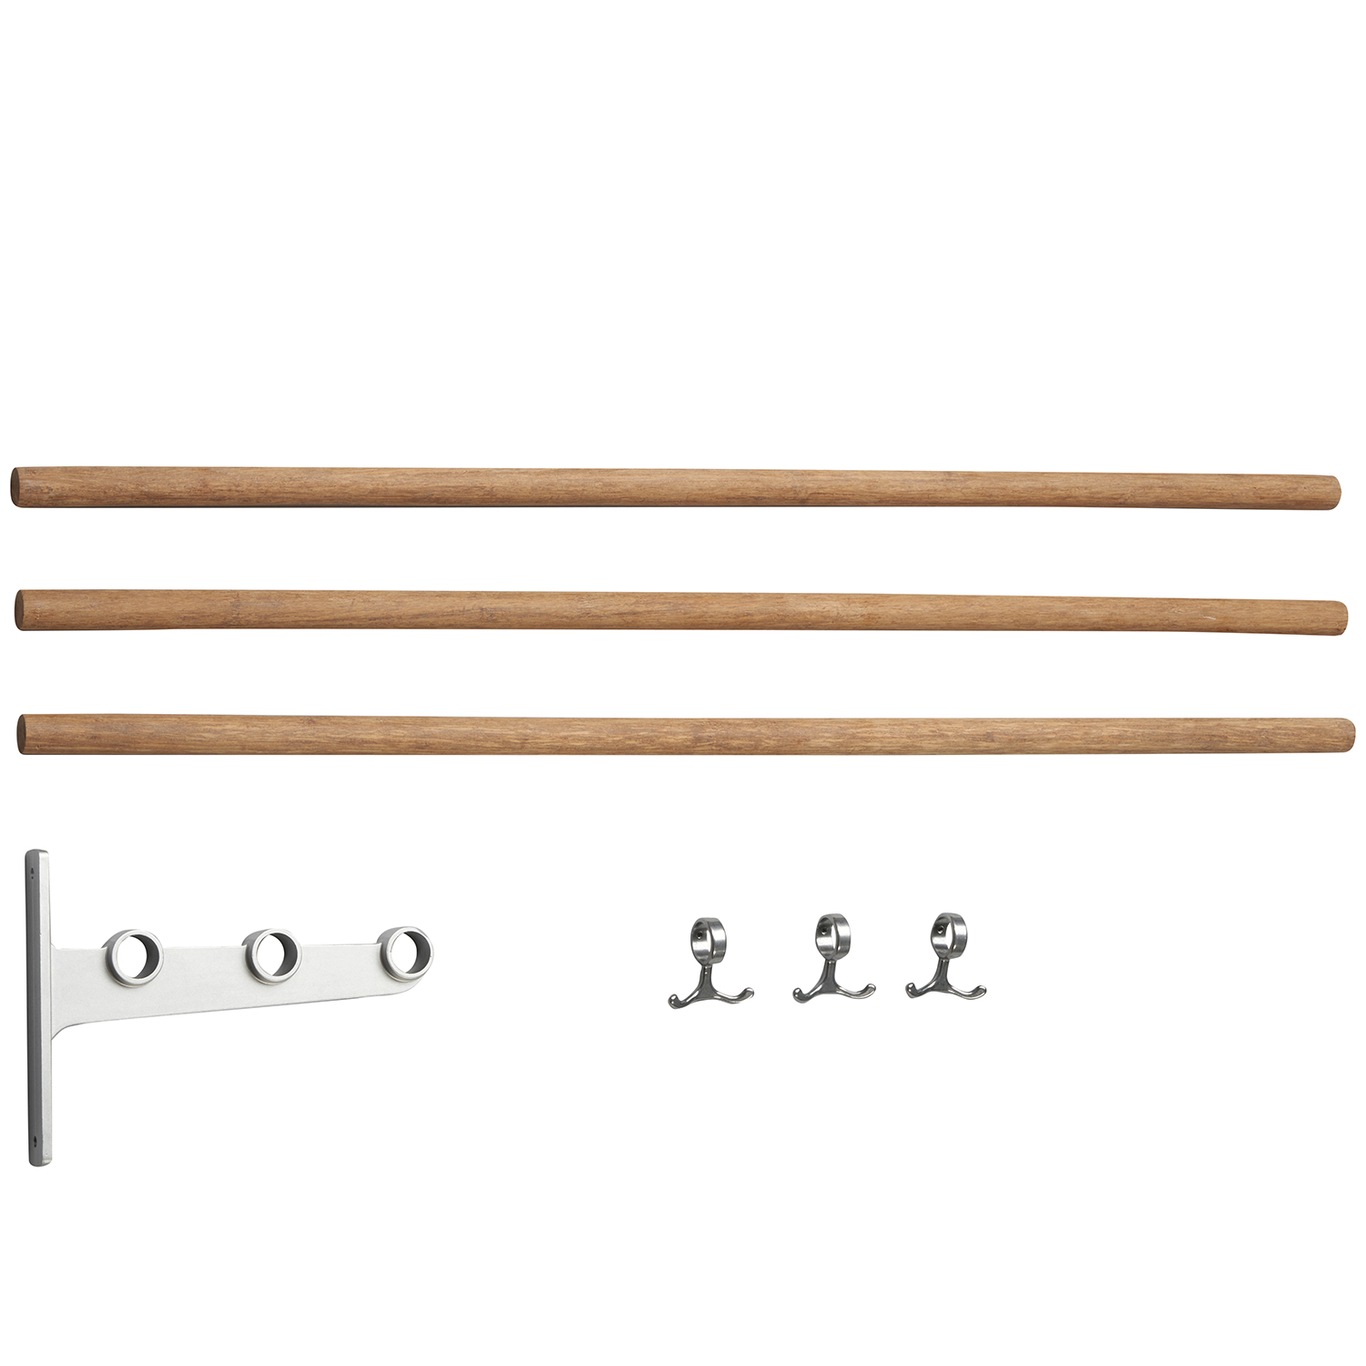 Nostalgi Extension Part For Hat Rack/ Shoe Rack, Aluminium Erweiterungsteil Für Hutablage / Schuhregal, Aluminium Aluminium Bamboo